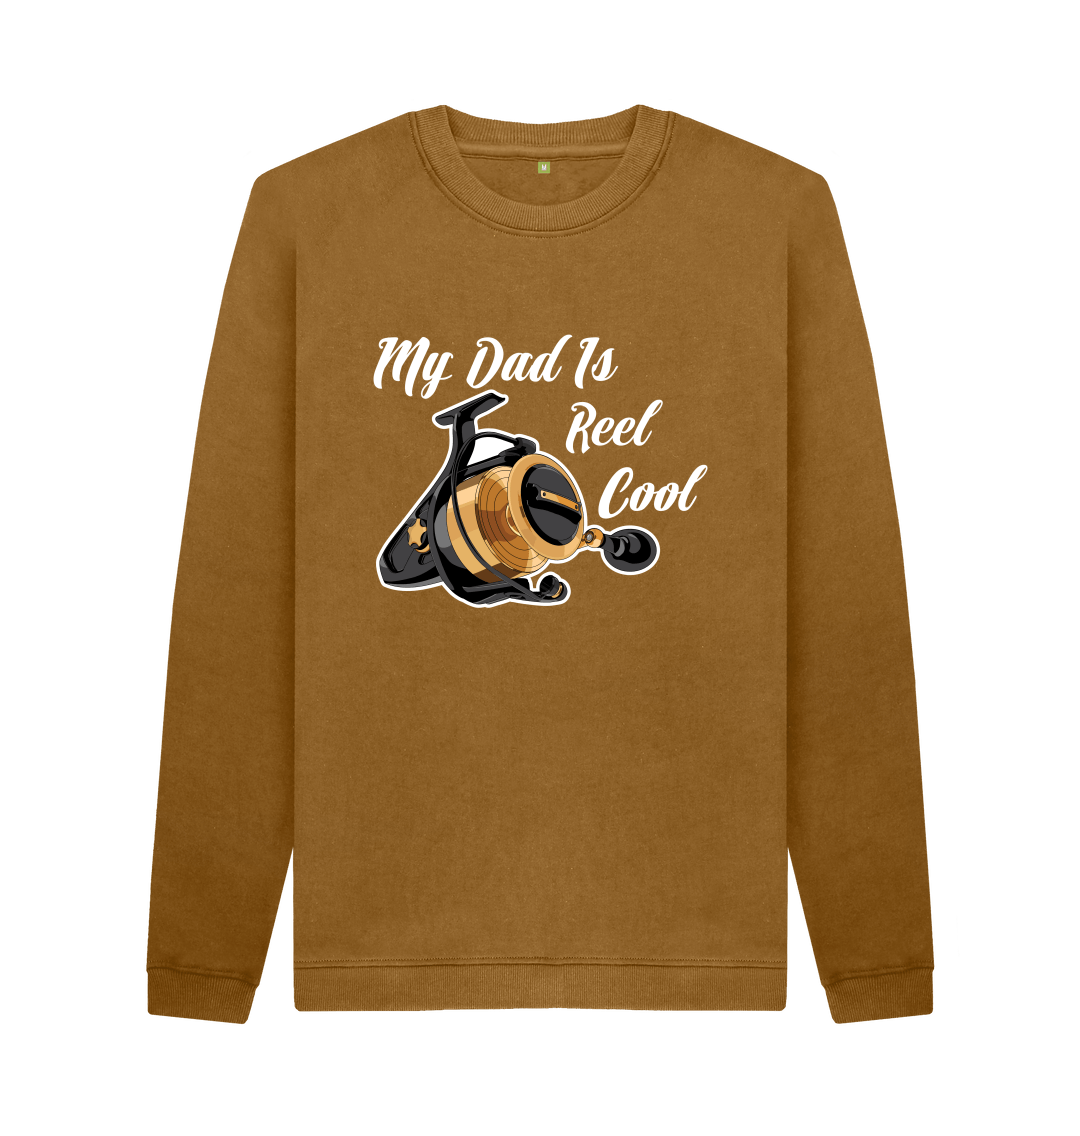 Reel Cool Dad Shirt